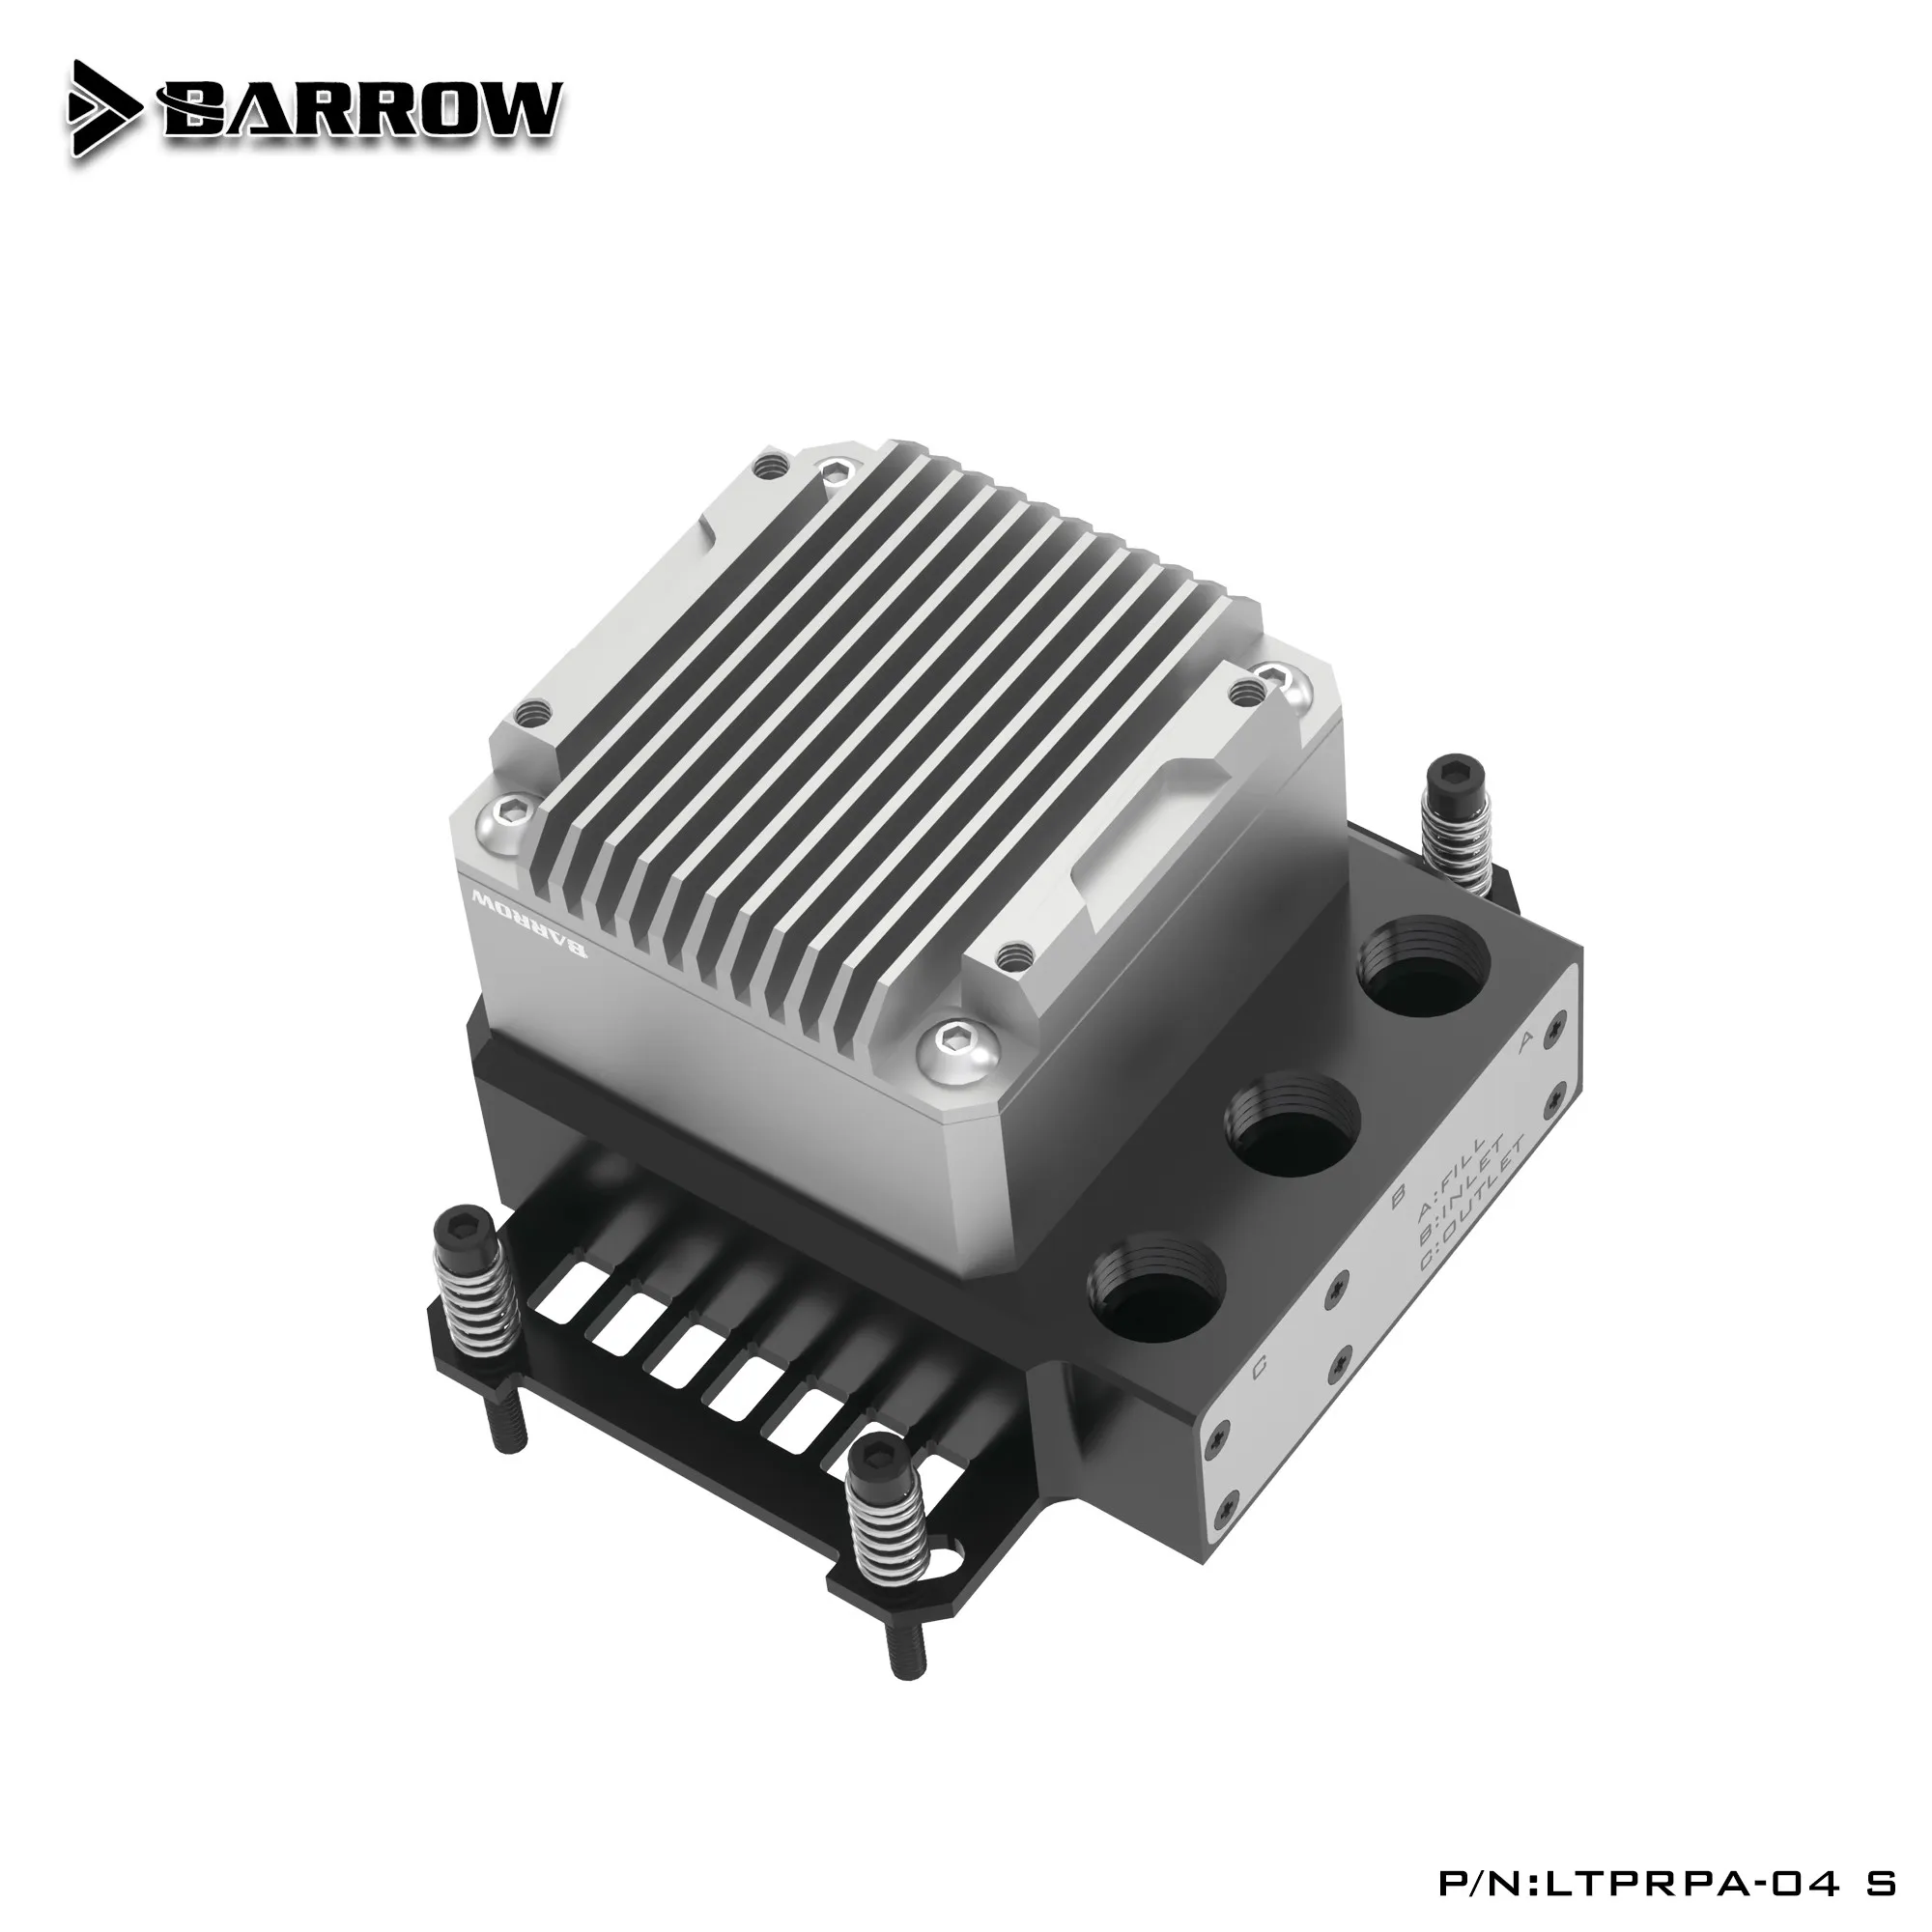 Мини-блок водяного охлаждения процессора Barrow с резервуаром для насоса интеллектуальной мощности 17 Вт для AM4/AM5/INTEL1700, LTPRP-04I S/LTPRPA-04 S